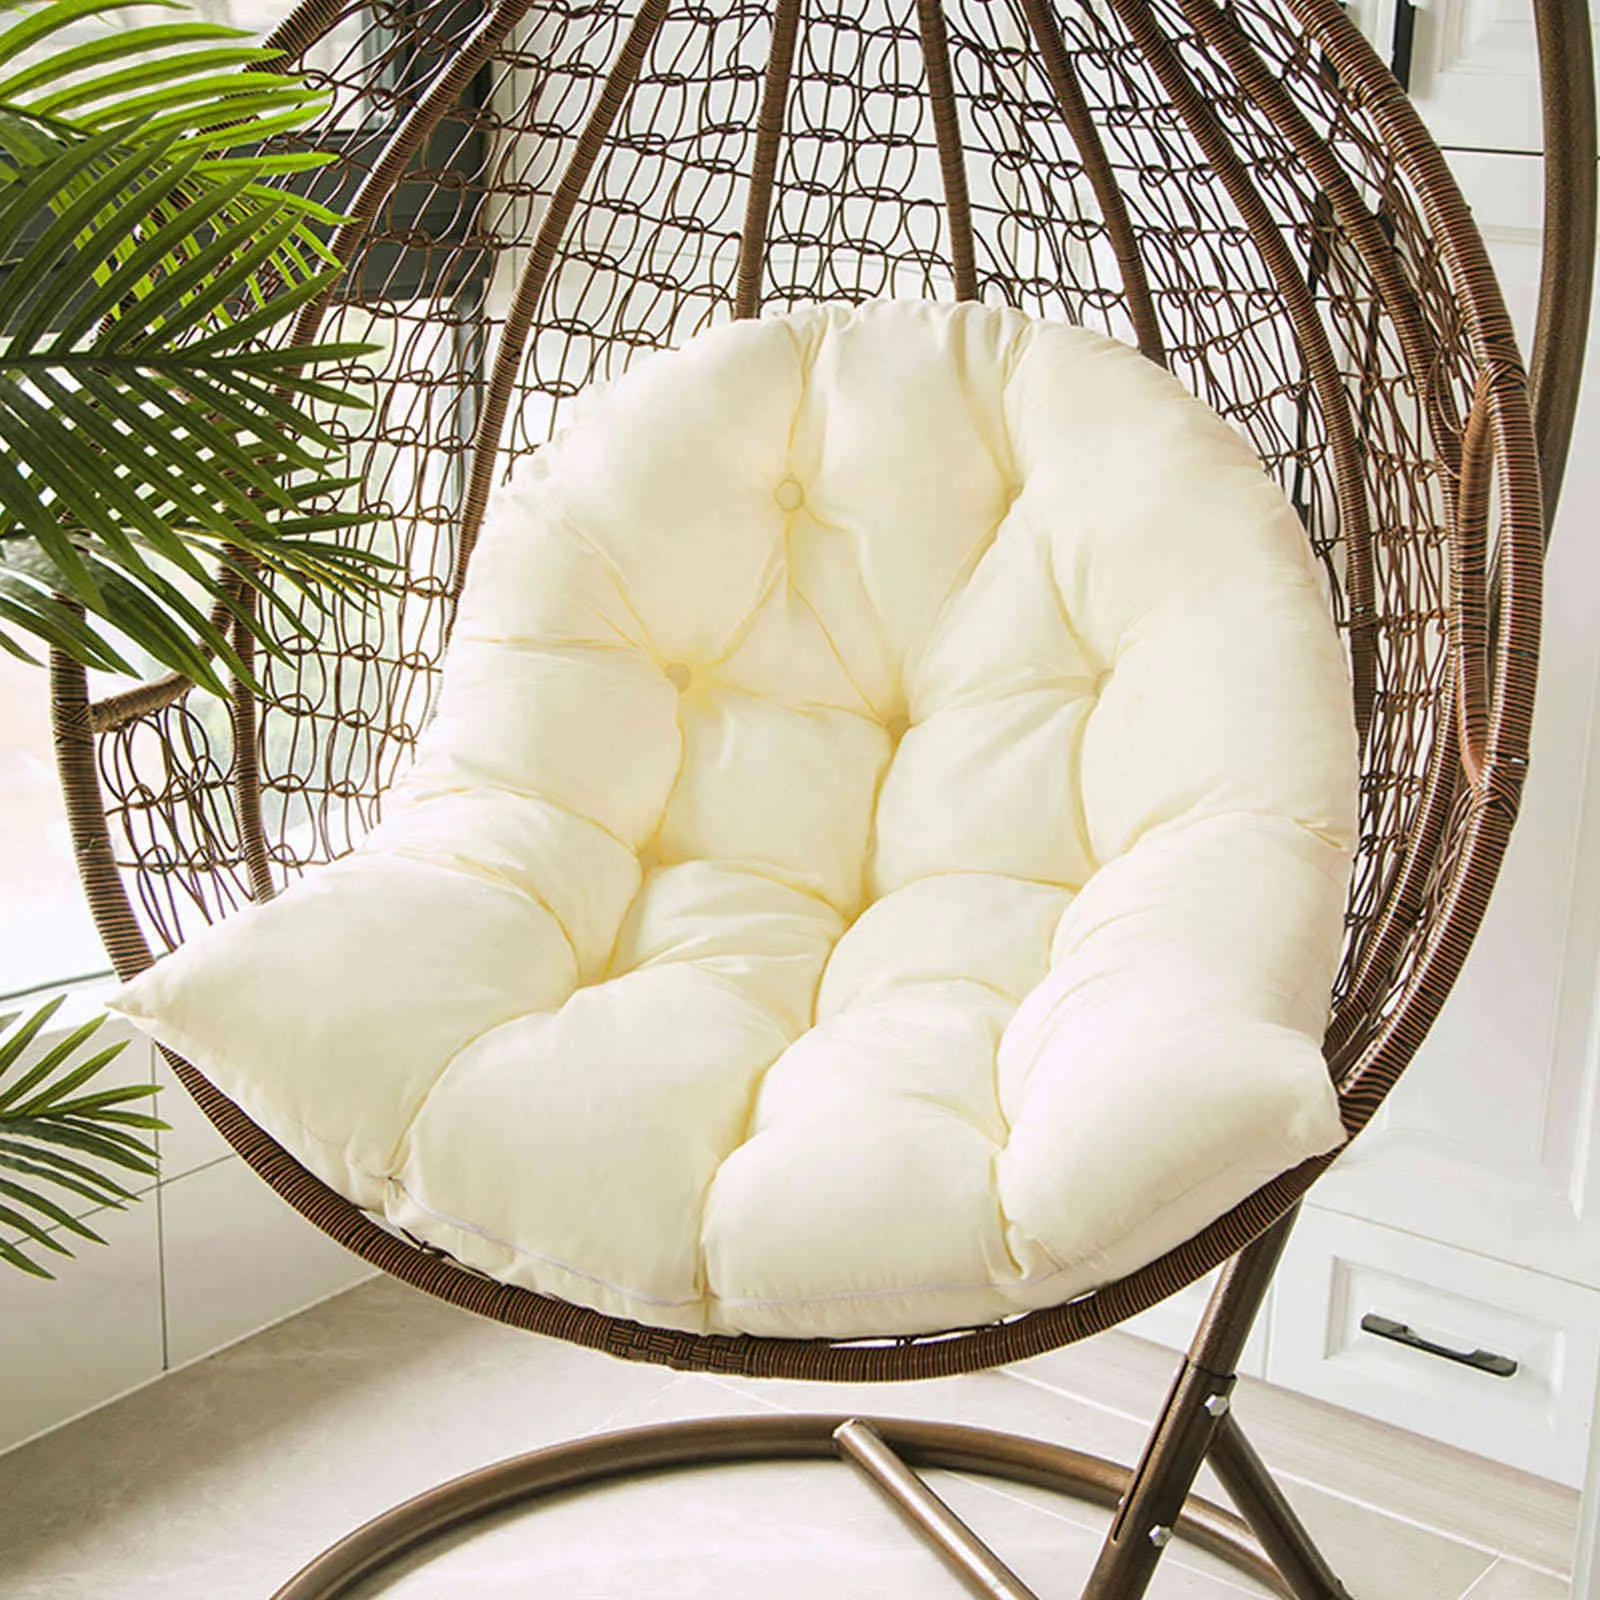 Стул с яйцом гамак сад свинг -подушка подвесное кресло с декоративной подушкой 5235643